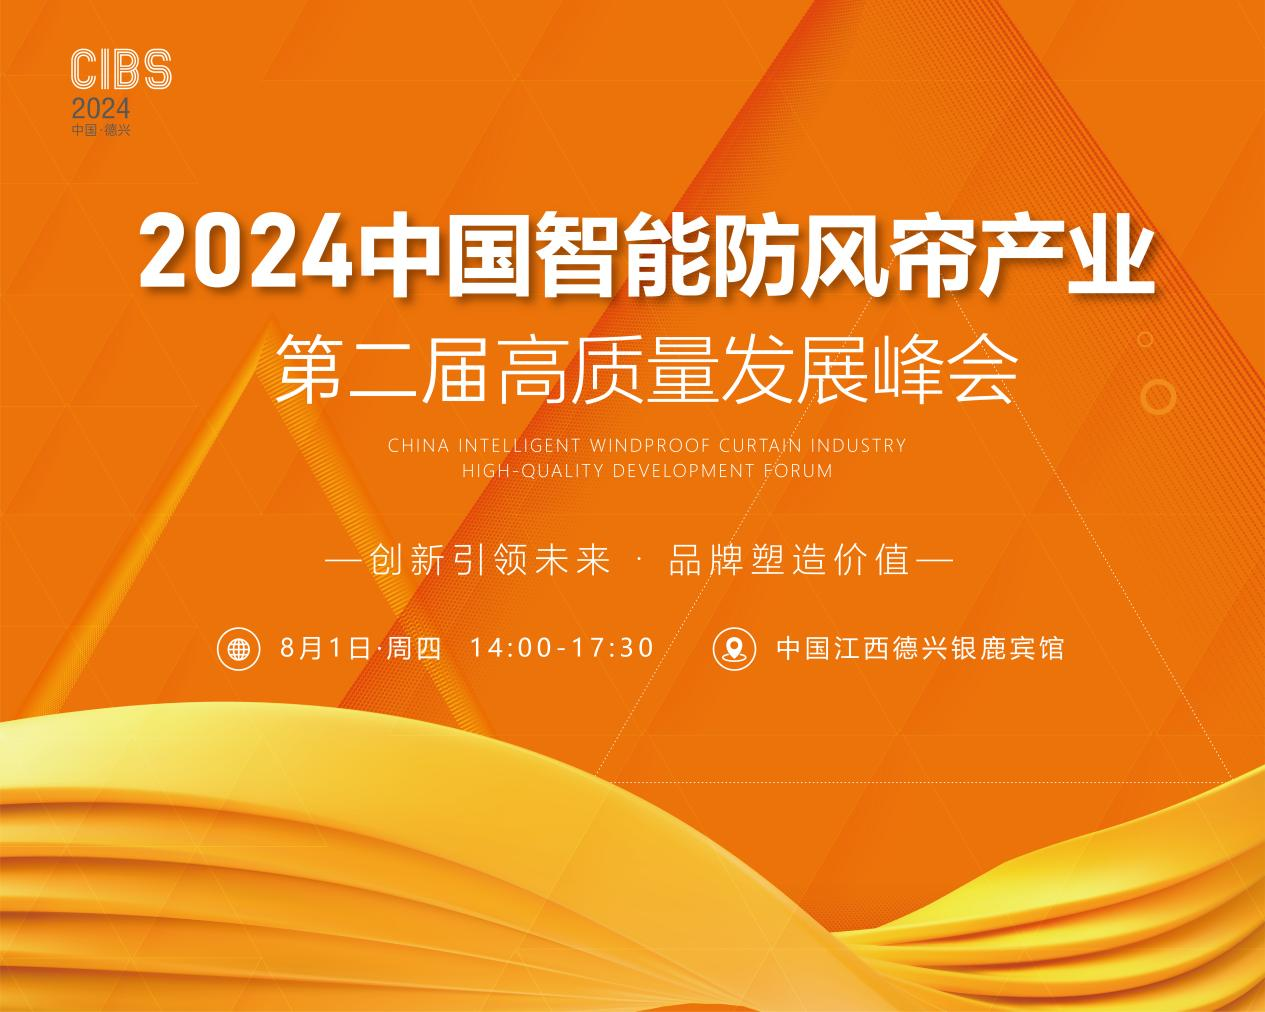 2024年8月1日，第二届中国智能防风帘产业高质量发展峰会将在江西省德兴市银鹿宾馆举行。